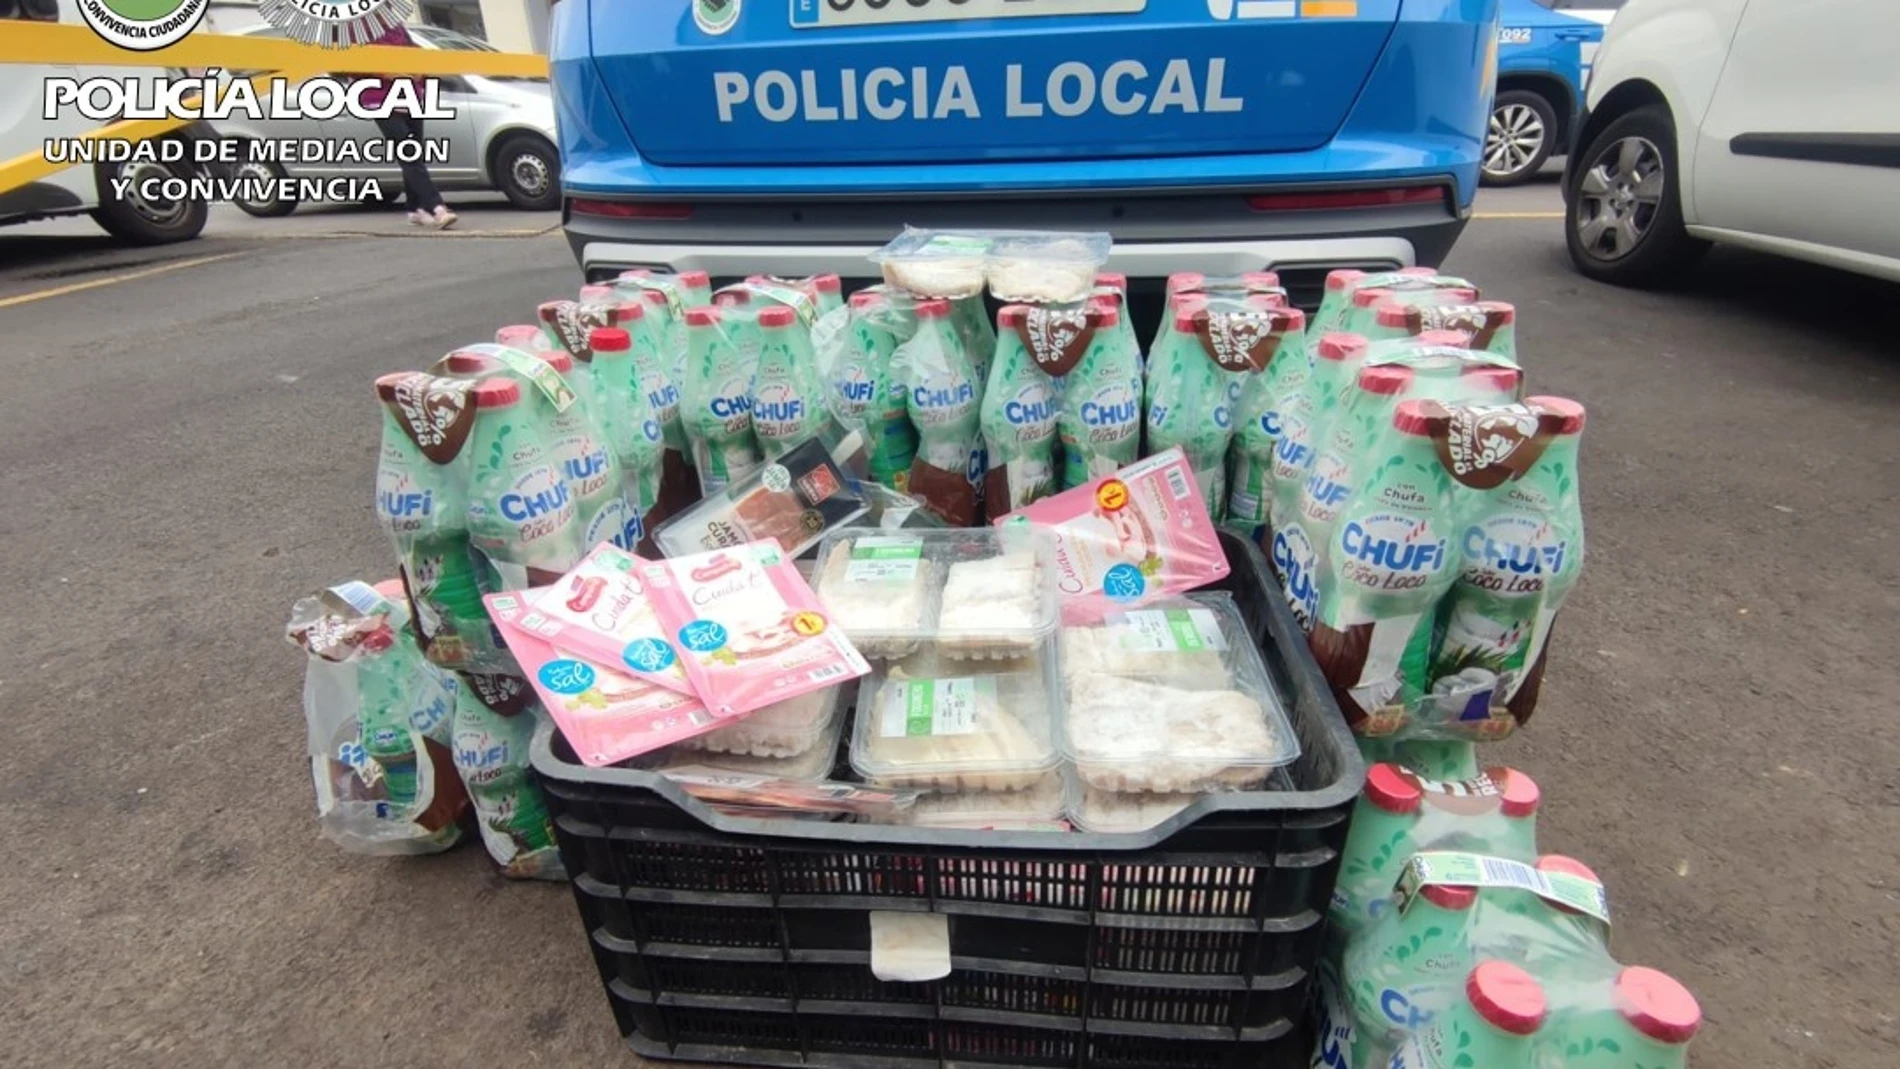 La Policía Local de Las Palmas de Gran Canaria se incauta de alimentos en mal estado en una organización social de Las Palmas de Gran Canaria que los repartía como ayuda